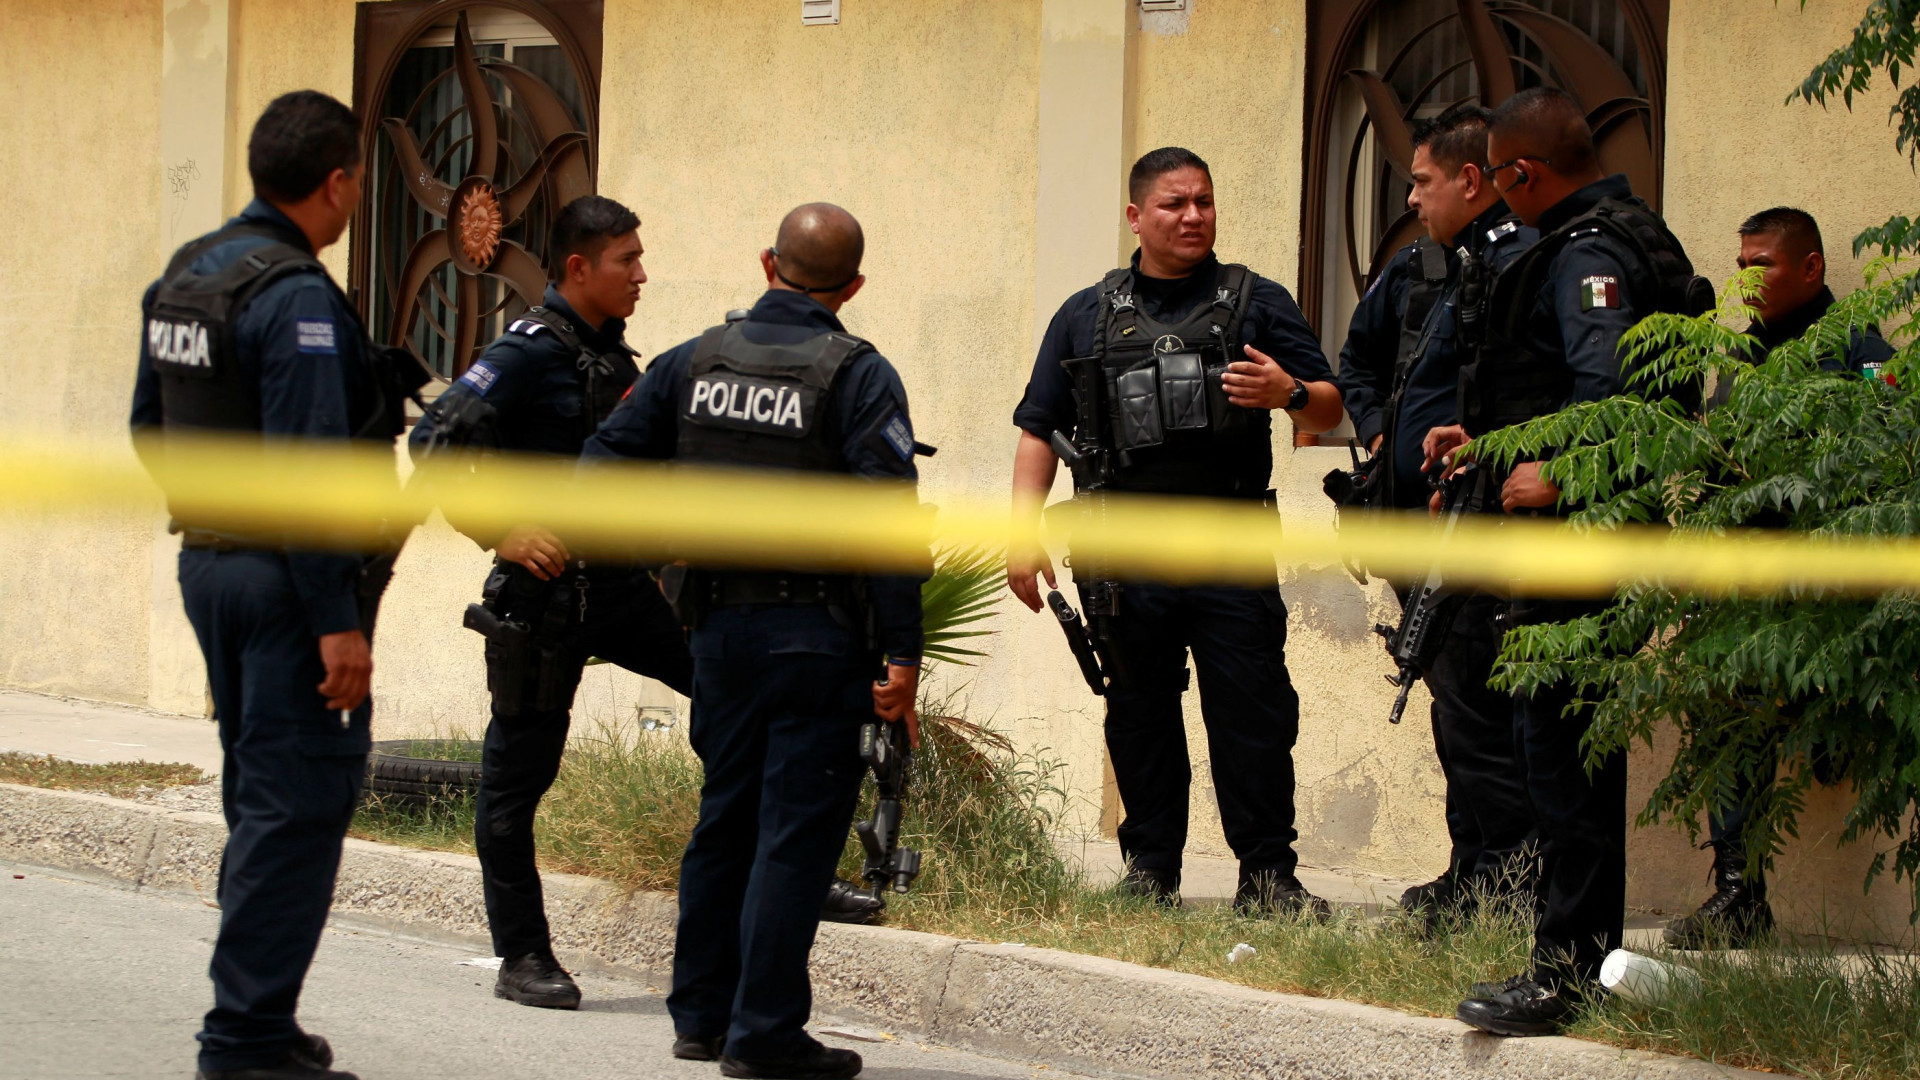 Encontrados 7 corpos decapitados e desmembrados dentro de carro no México